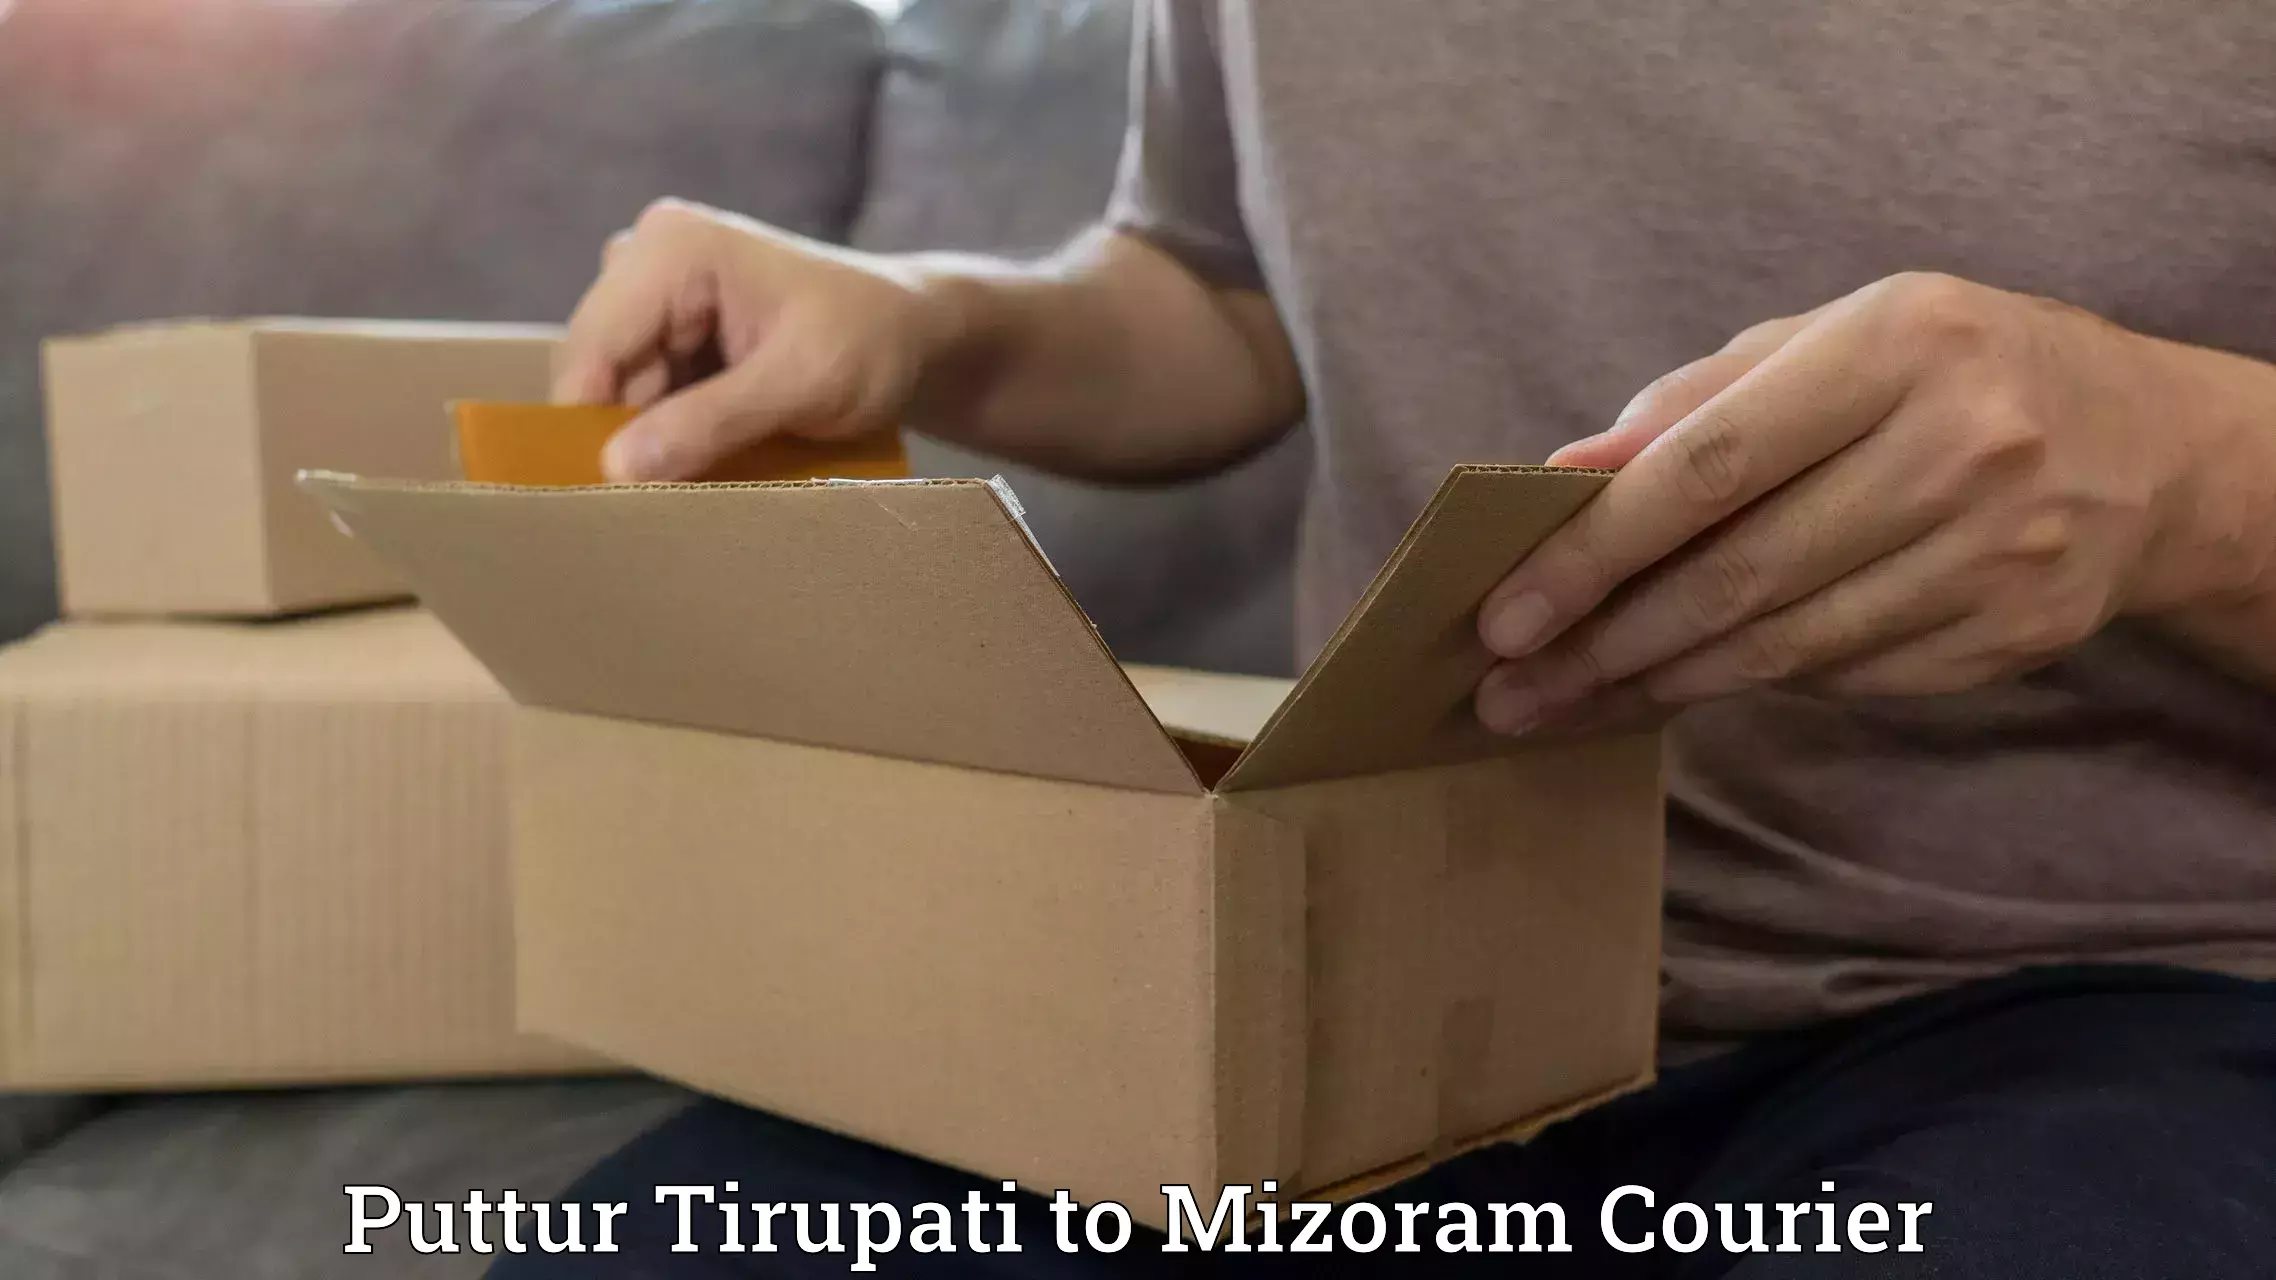 Efficient order fulfillment Puttur Tirupati to NIT Aizawl